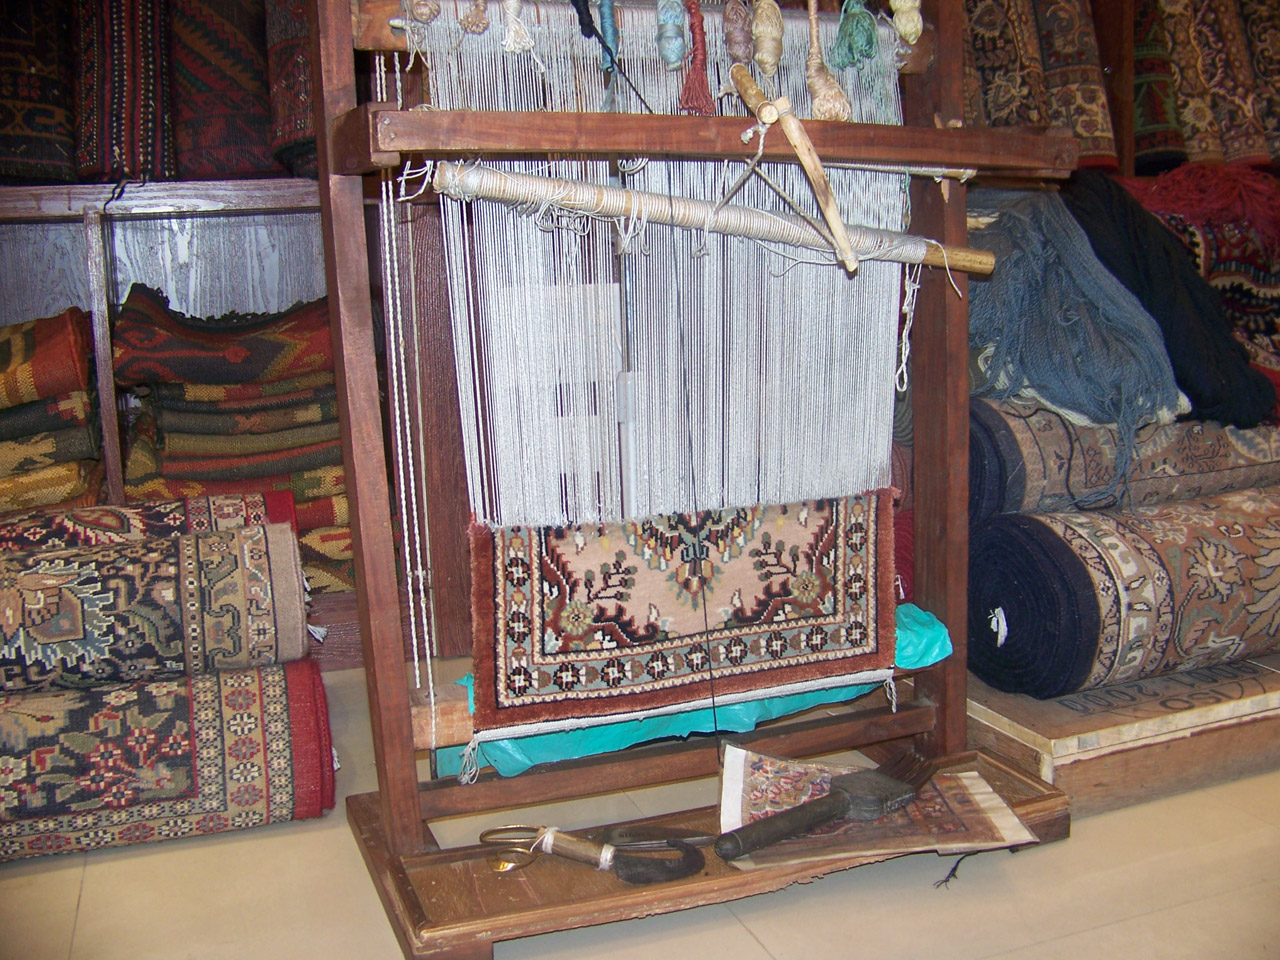 织布机